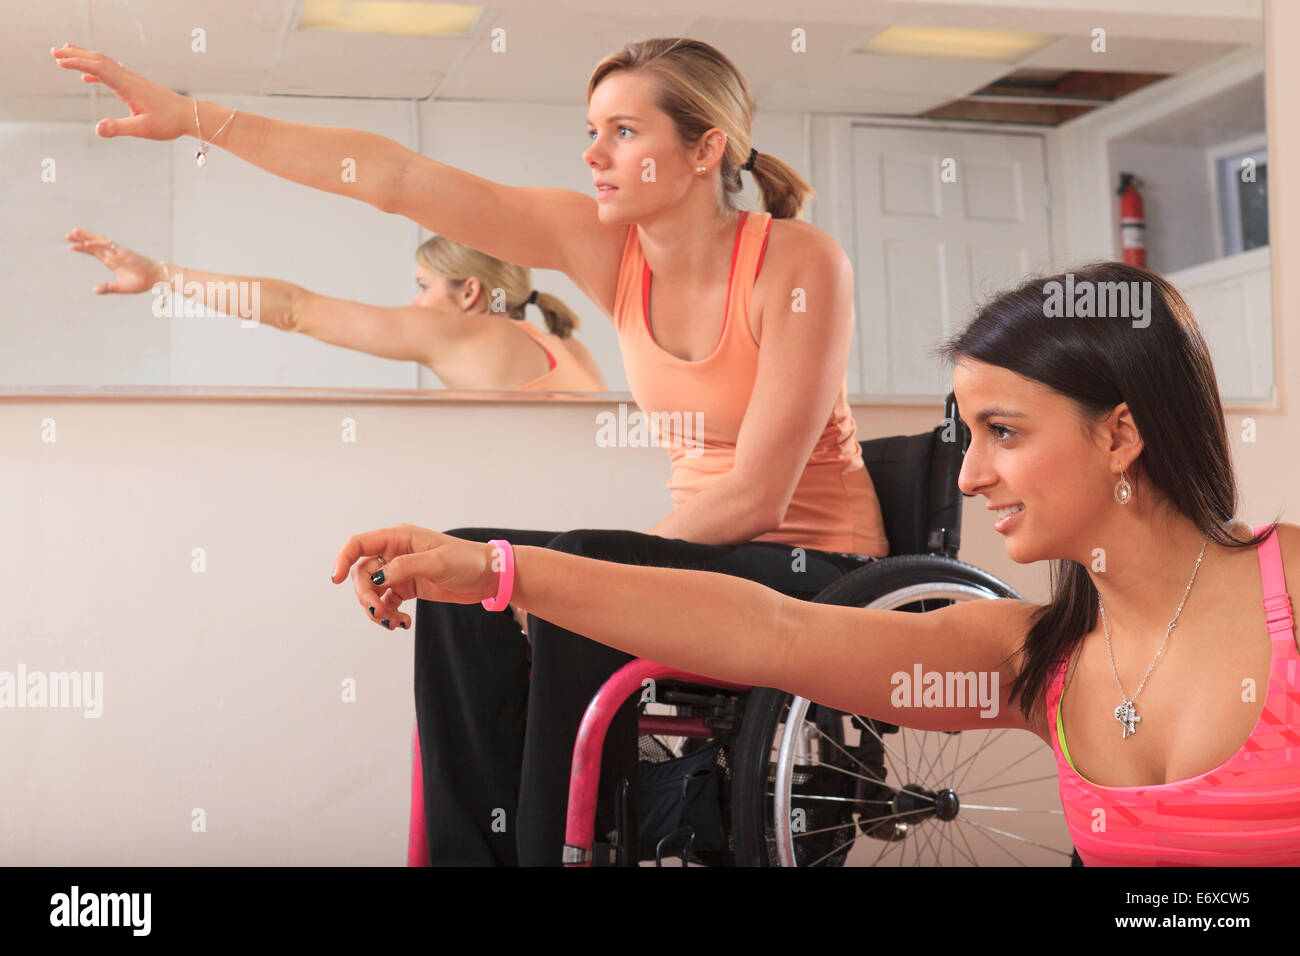 Las mujeres jóvenes con lesiones de la médula espinal estiramiento en un estudio de yoga Foto de stock